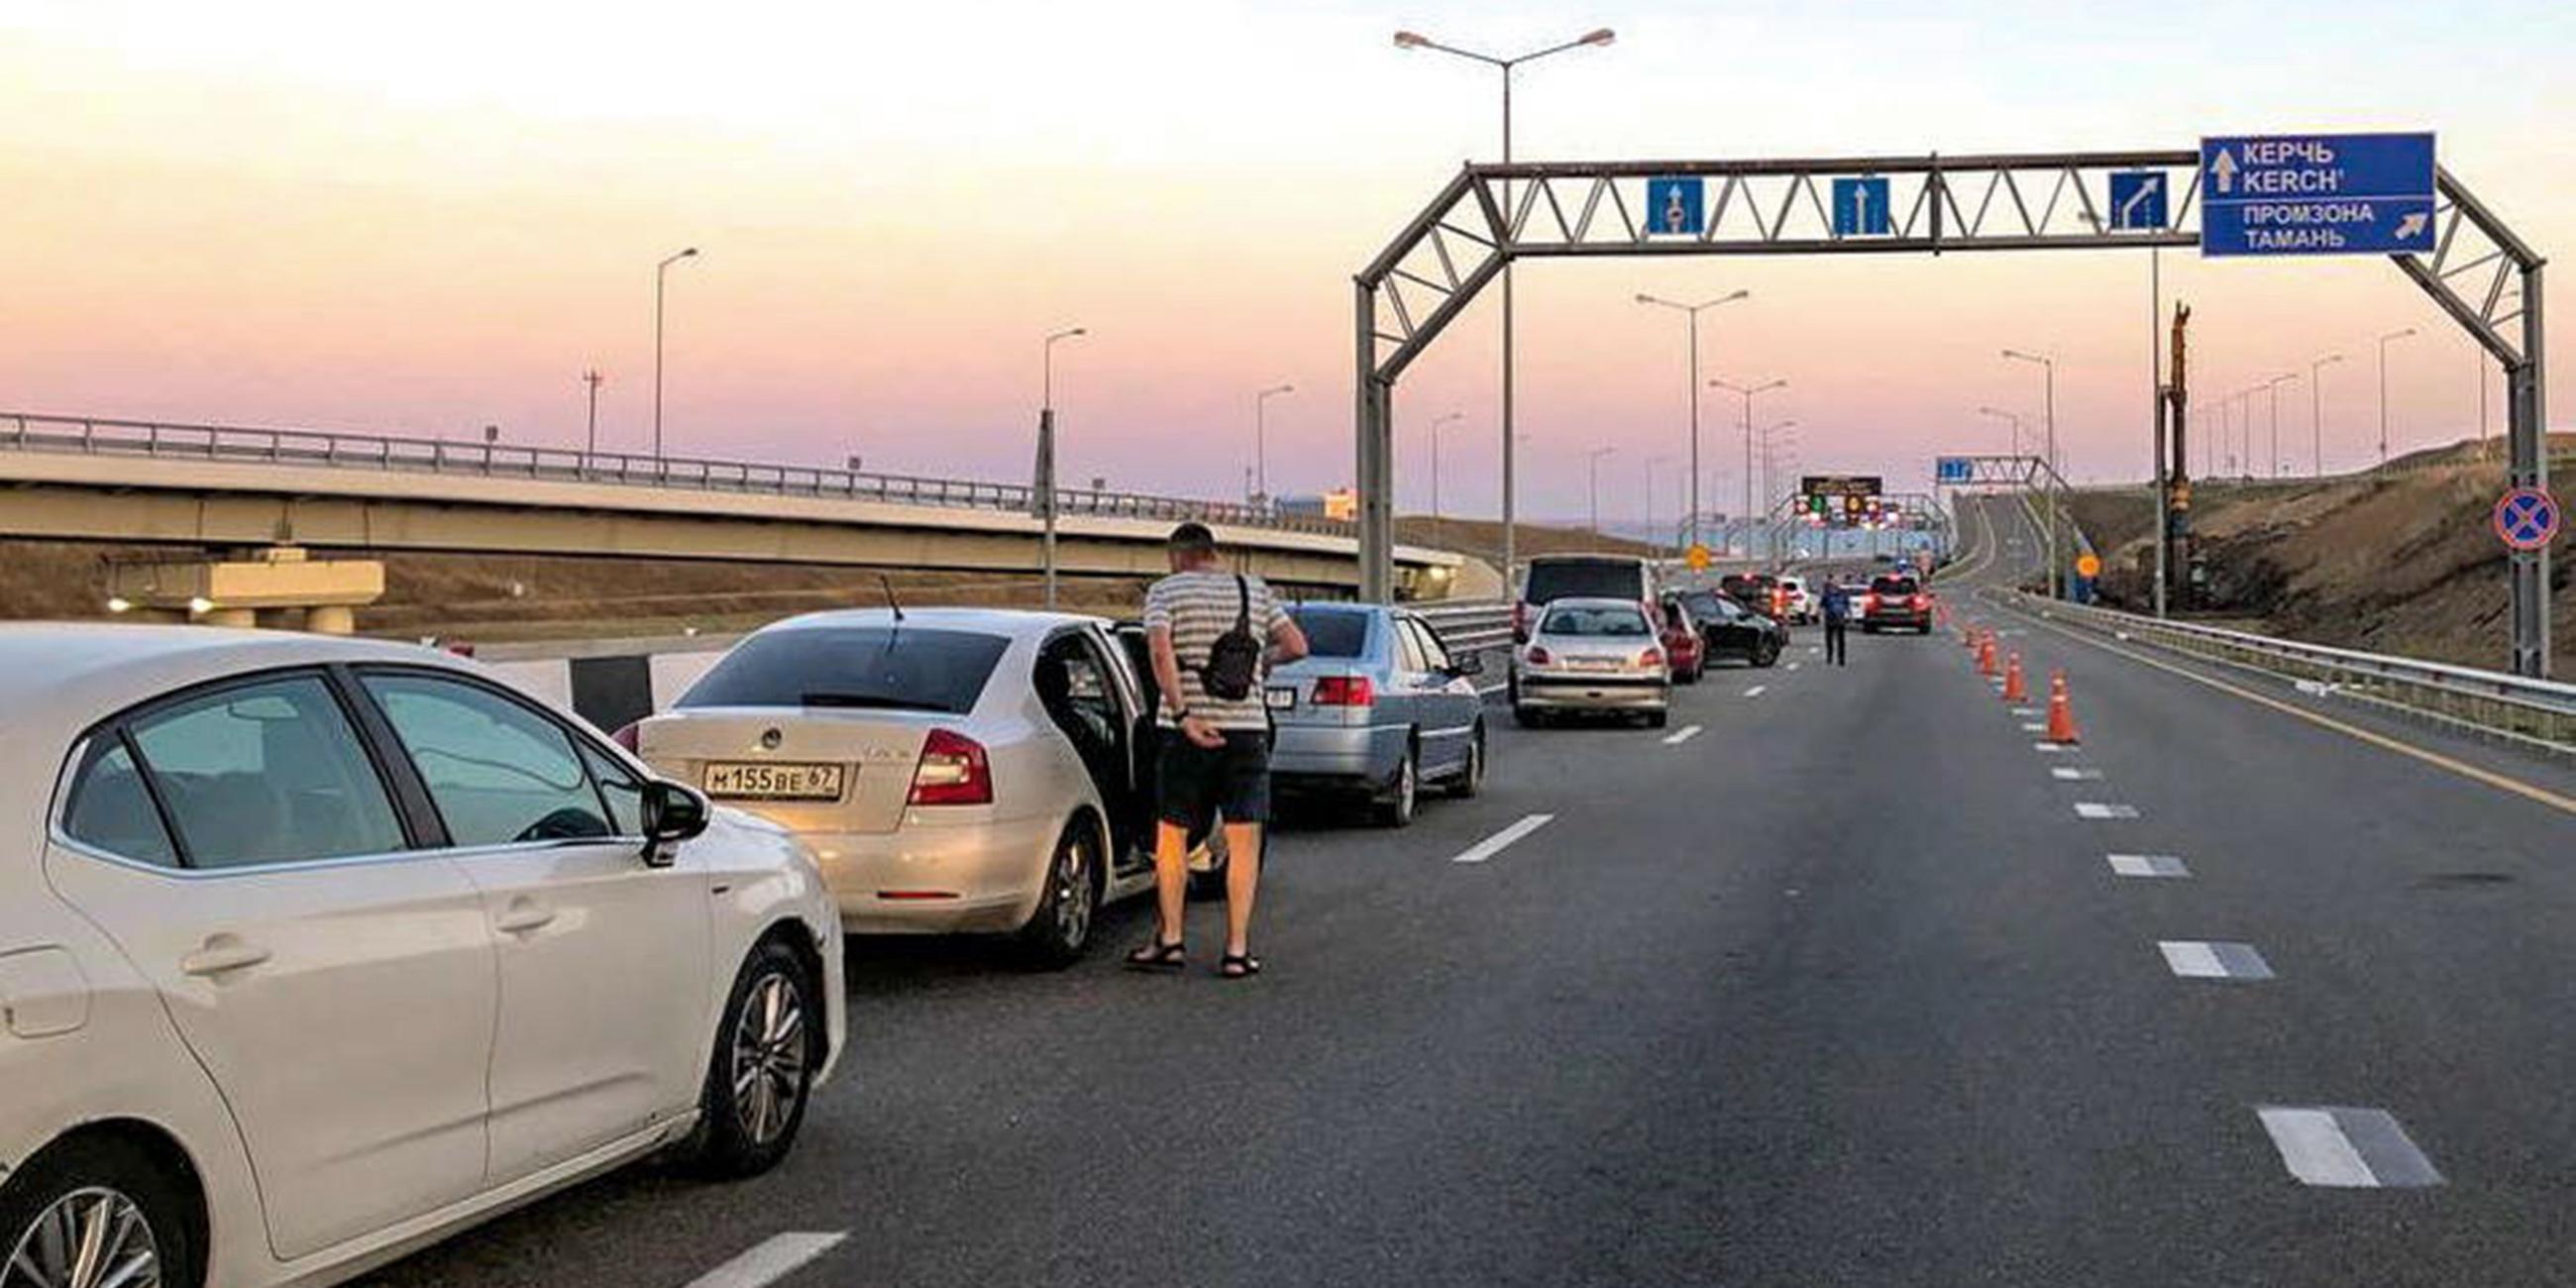 Verkehr auf Krim-Brücke nach "Notfall" unterbrochen